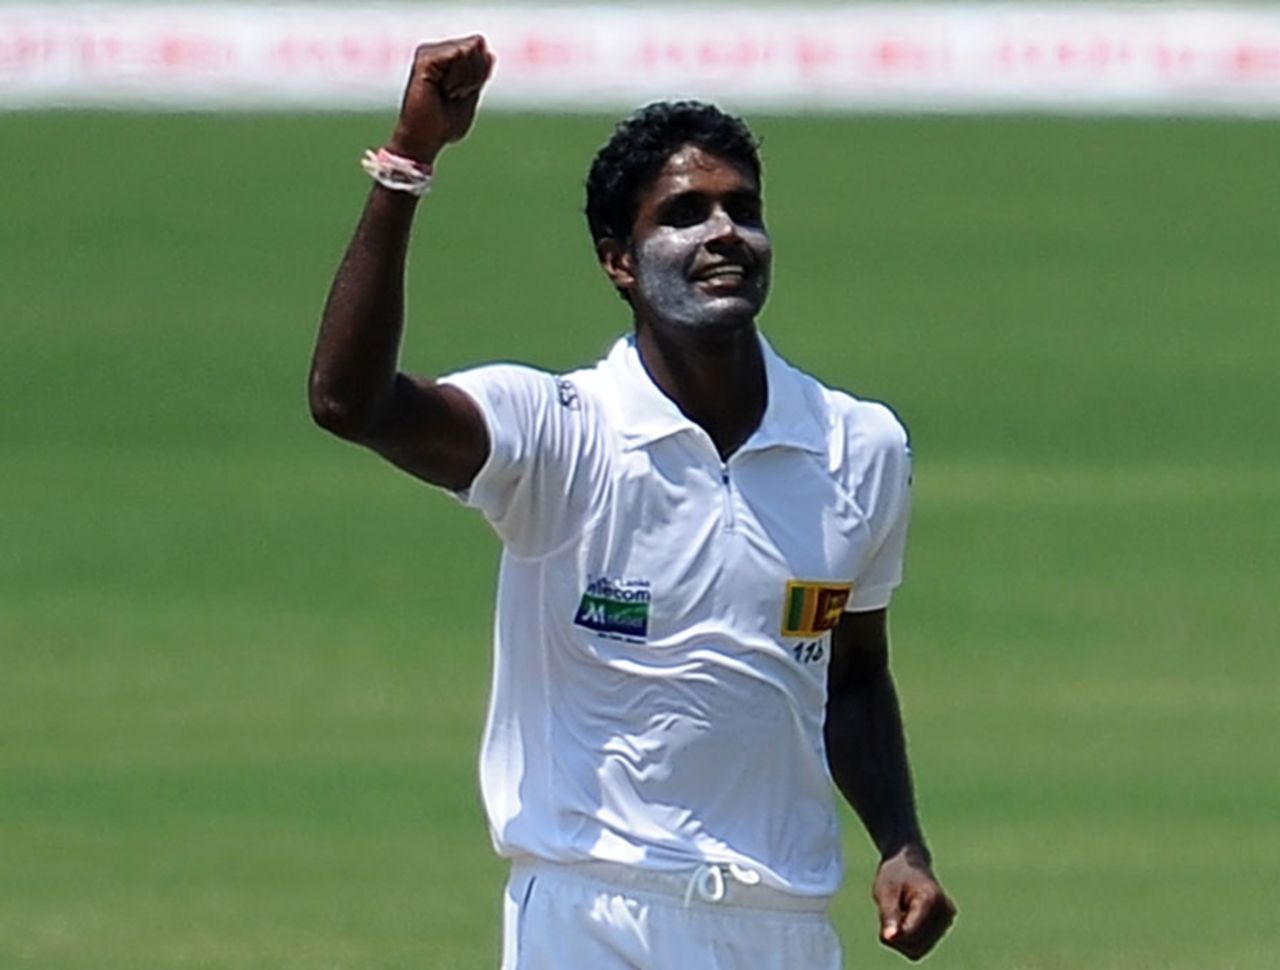 Shaminda Eranga celebrates the wicket of Jahurul Islam, Sri Lanka v Bangladesh, 2nd Test, Colombo, 1st day, March 16, 2013